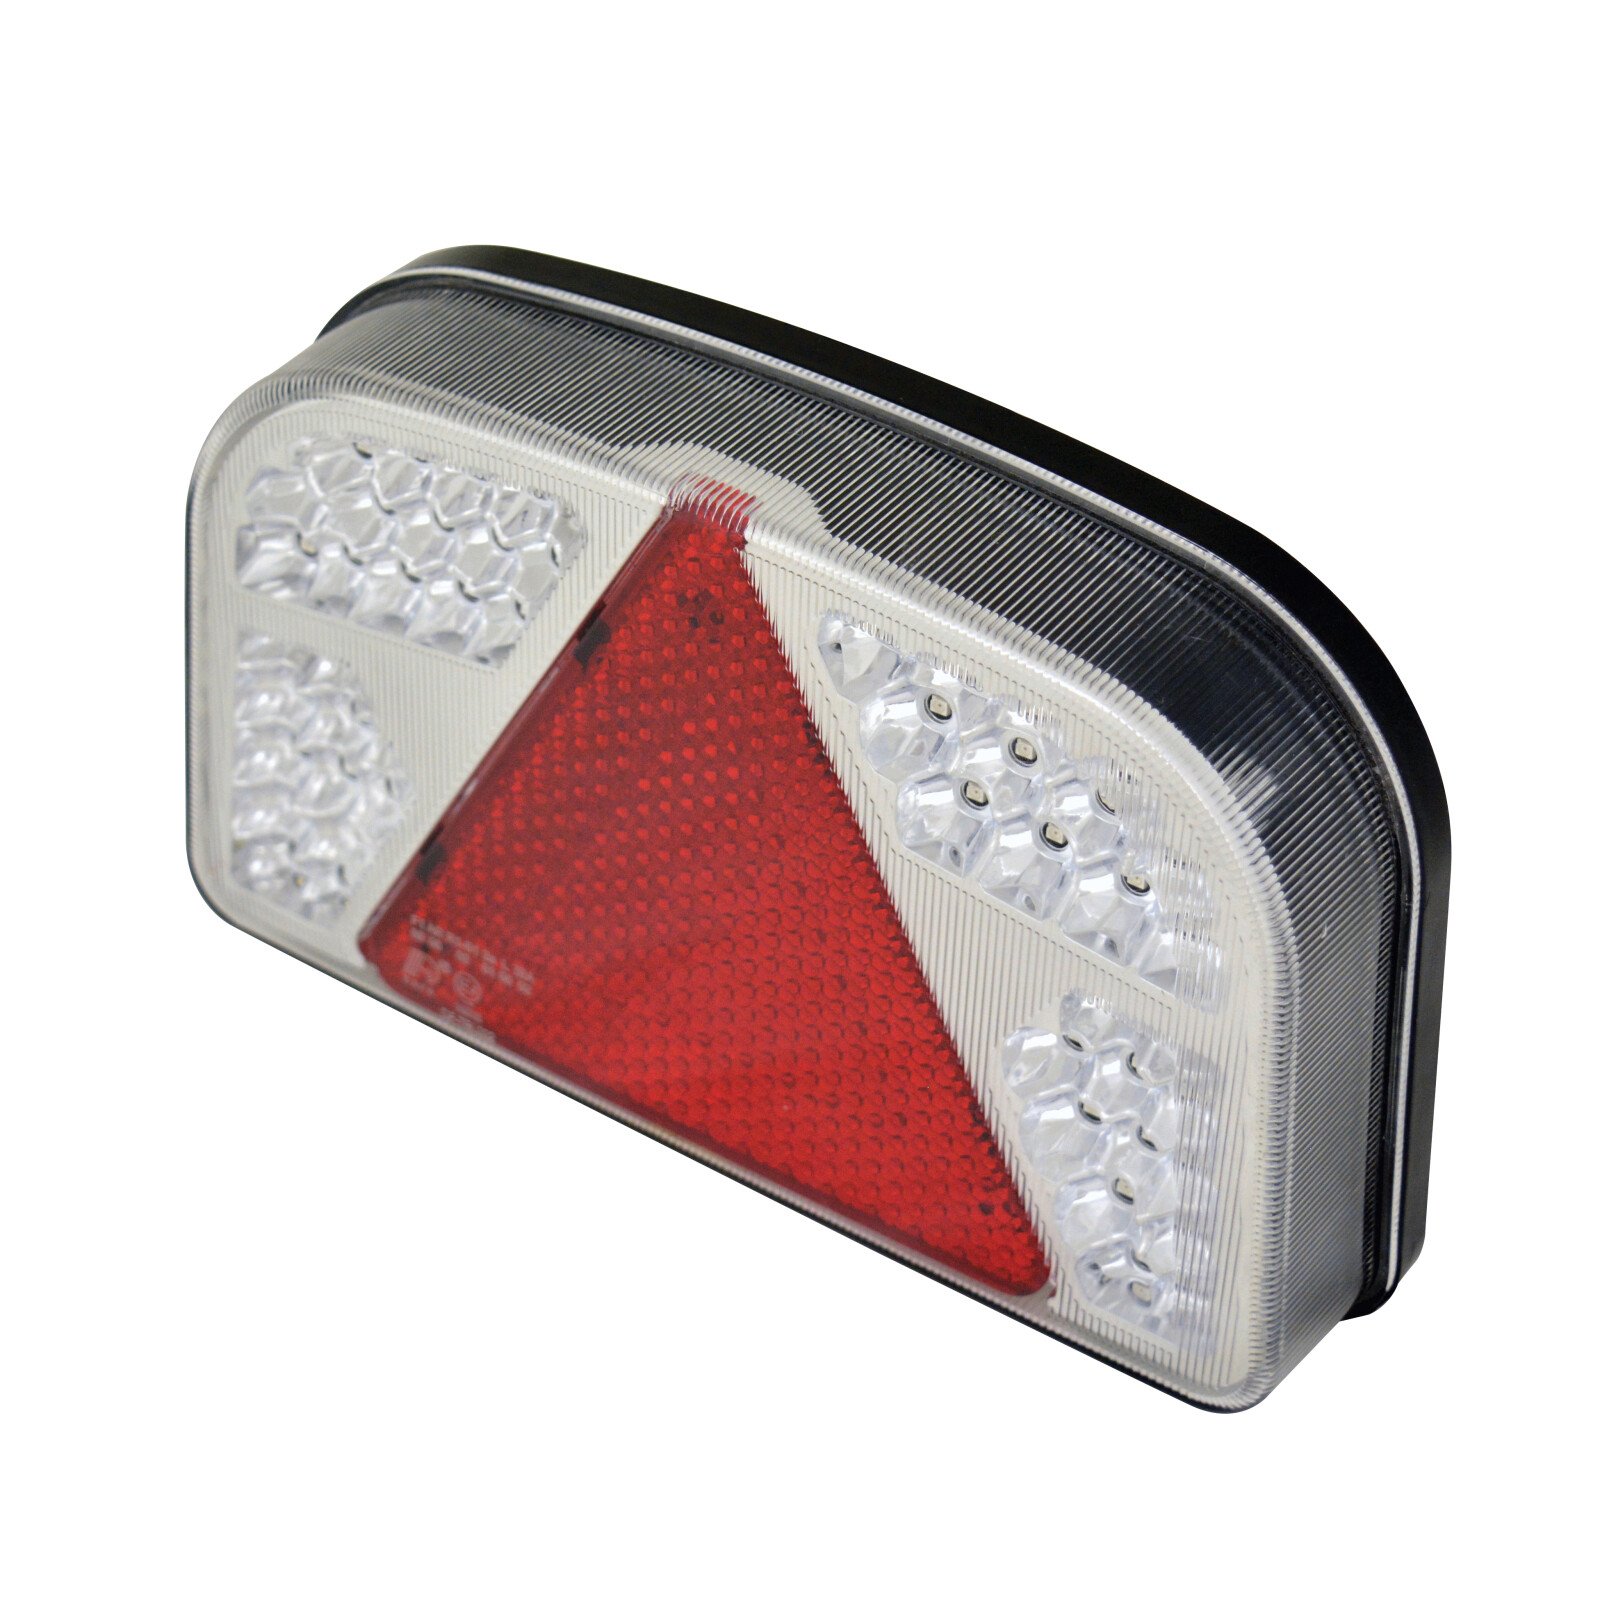 Hátsó stop lámpa LED-es 7funkciós 244x148mm Carpoint - Bal thumb